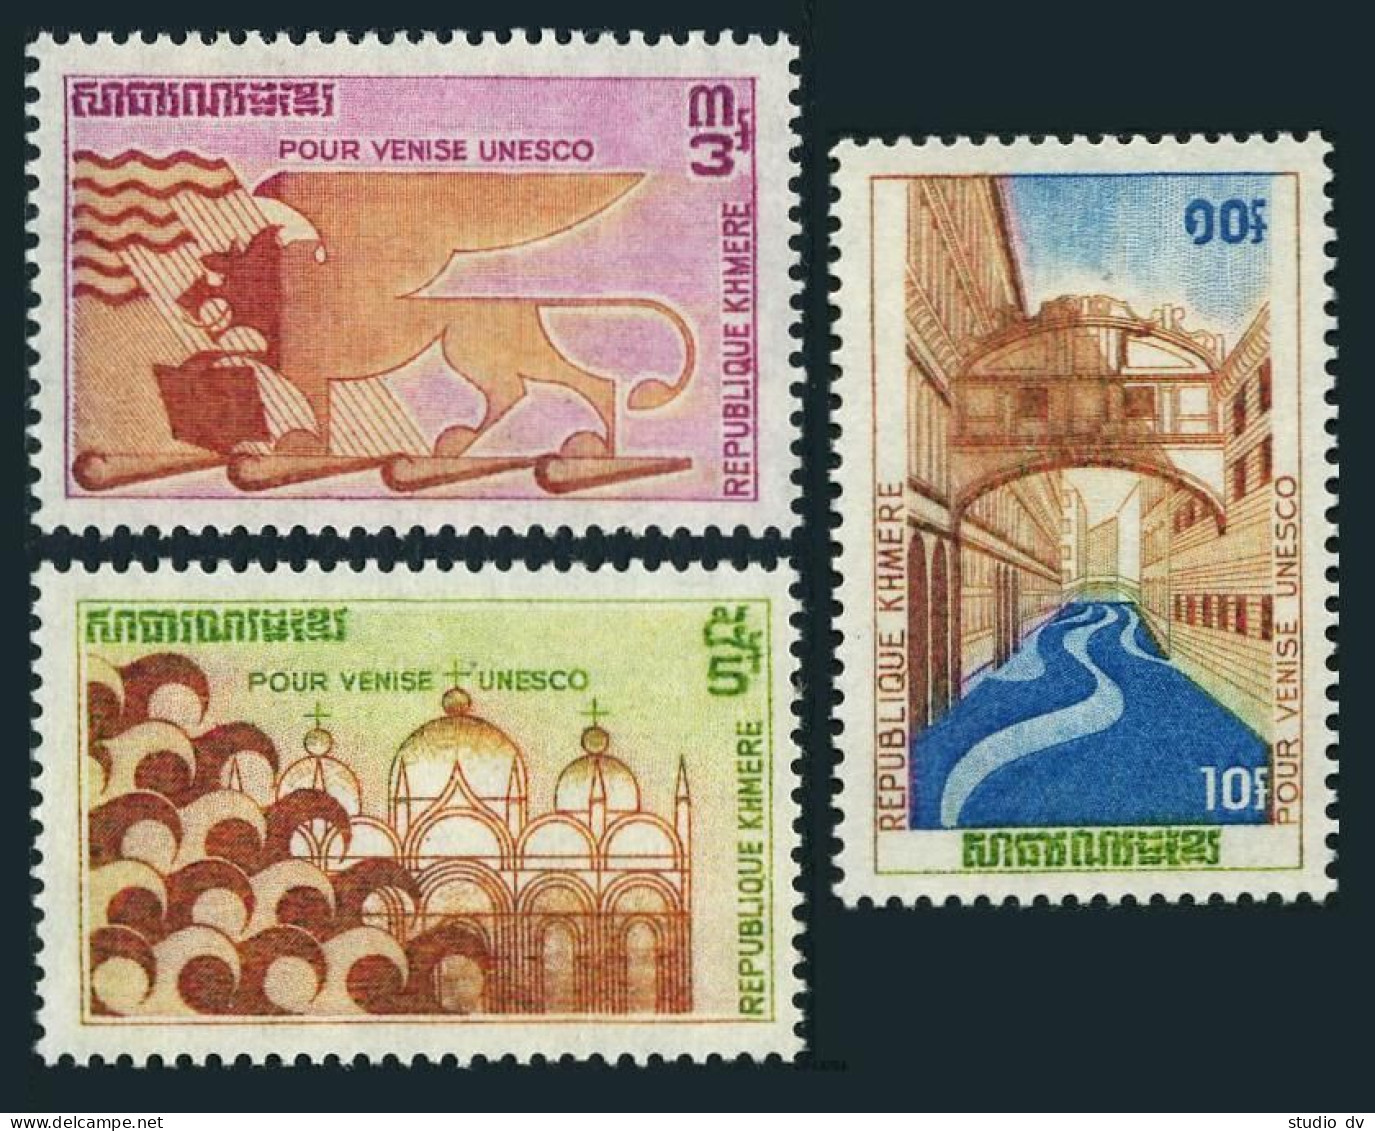 Cambodia 275-277, MNH. Michel 318-320. UNESCO Campaign To Save Venice, 1972. - Cambogia